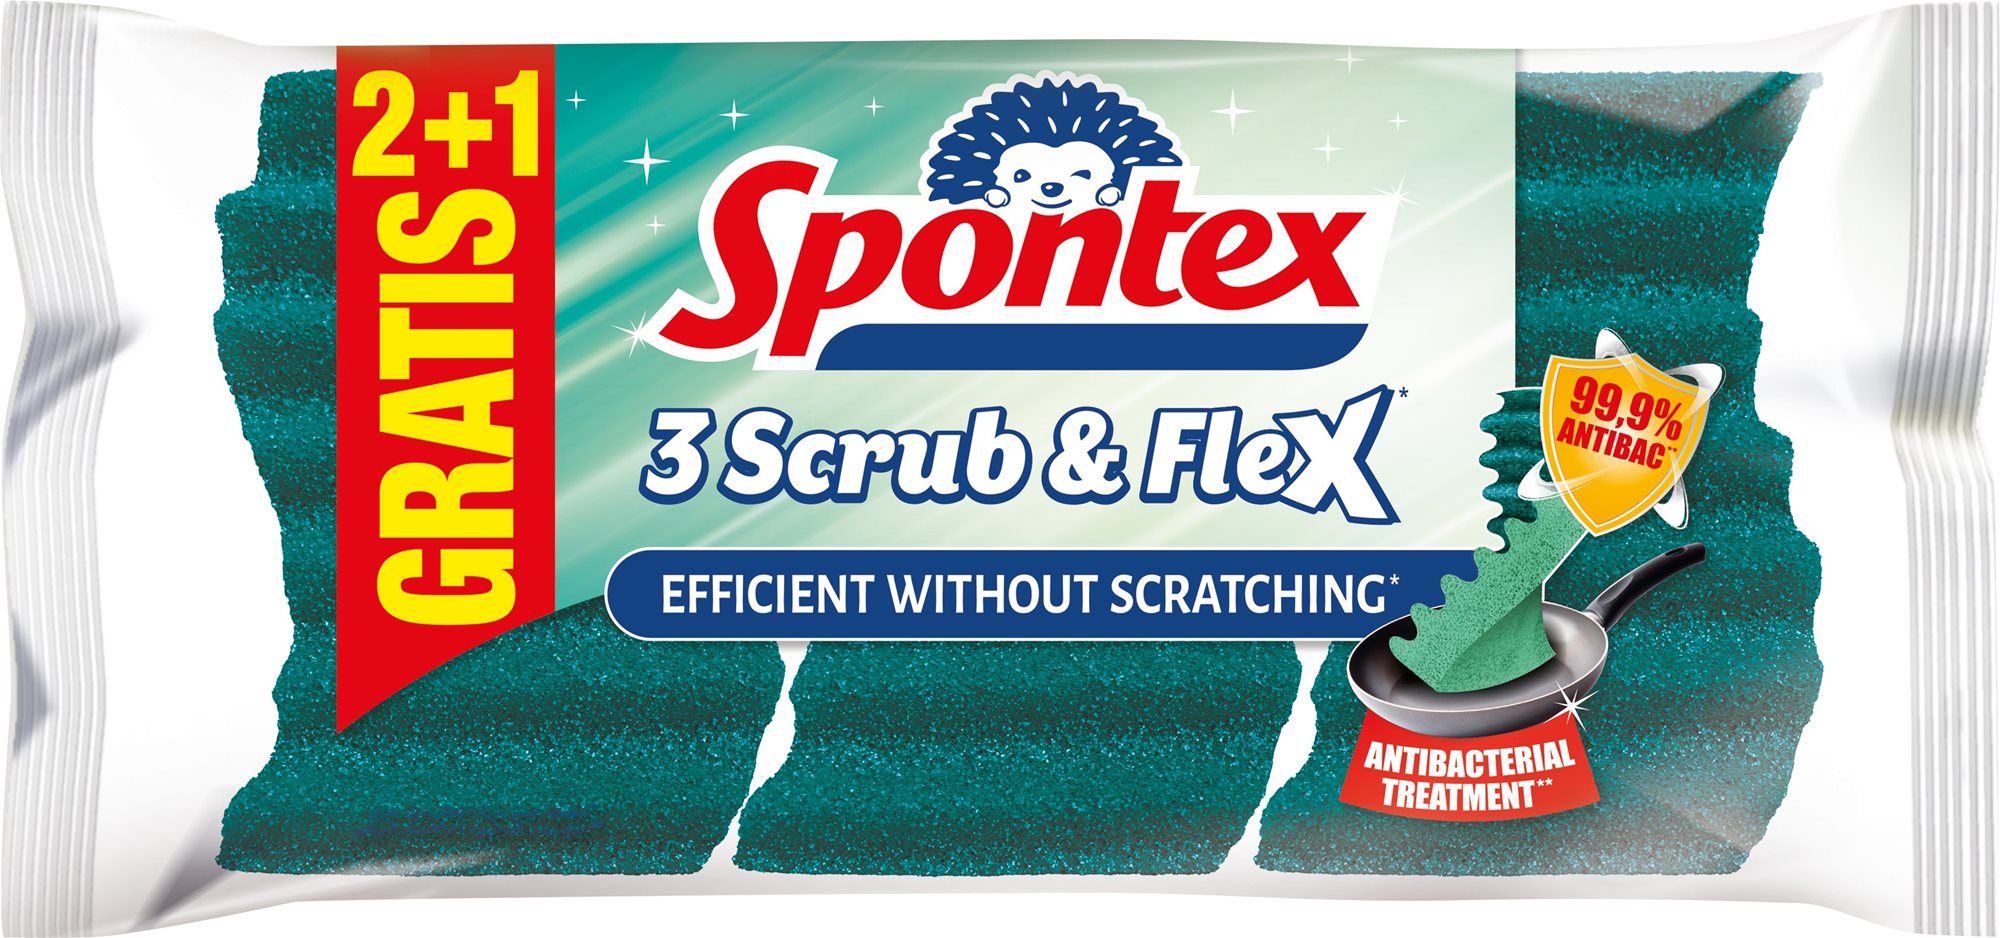 SPONTEX Scrub&Flex szivacs 3 darab